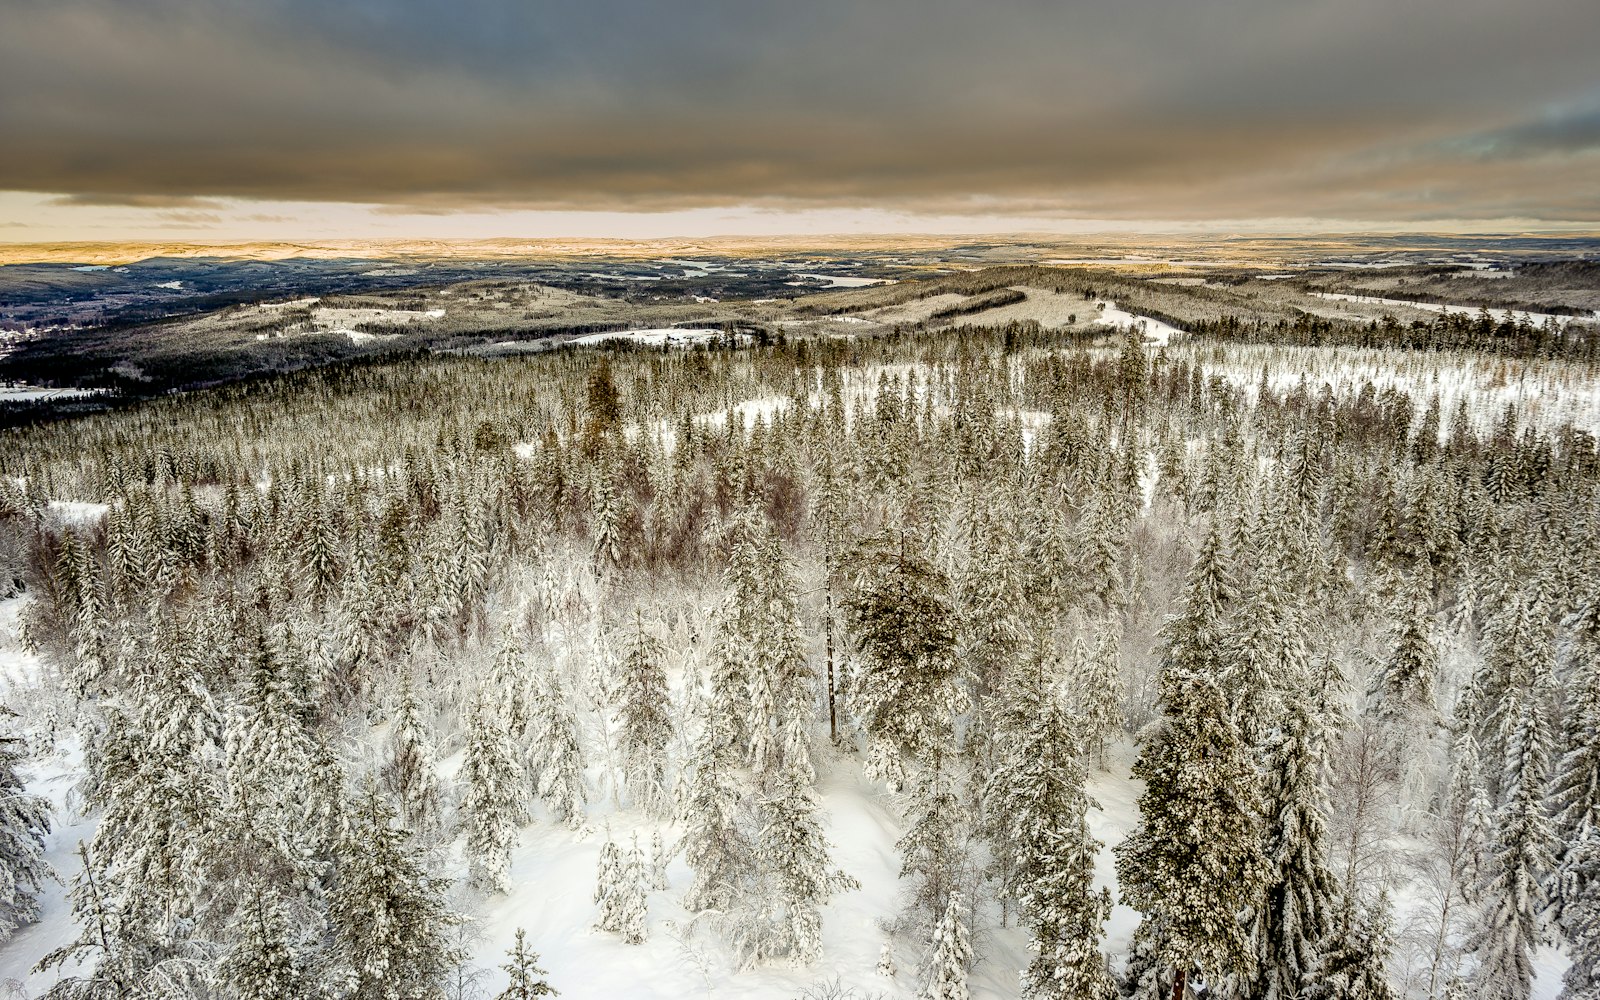 Voigtlander Color Skopar 20mm f/3.5 SLII Aspherical sample photo. Aerial photography of snow photography